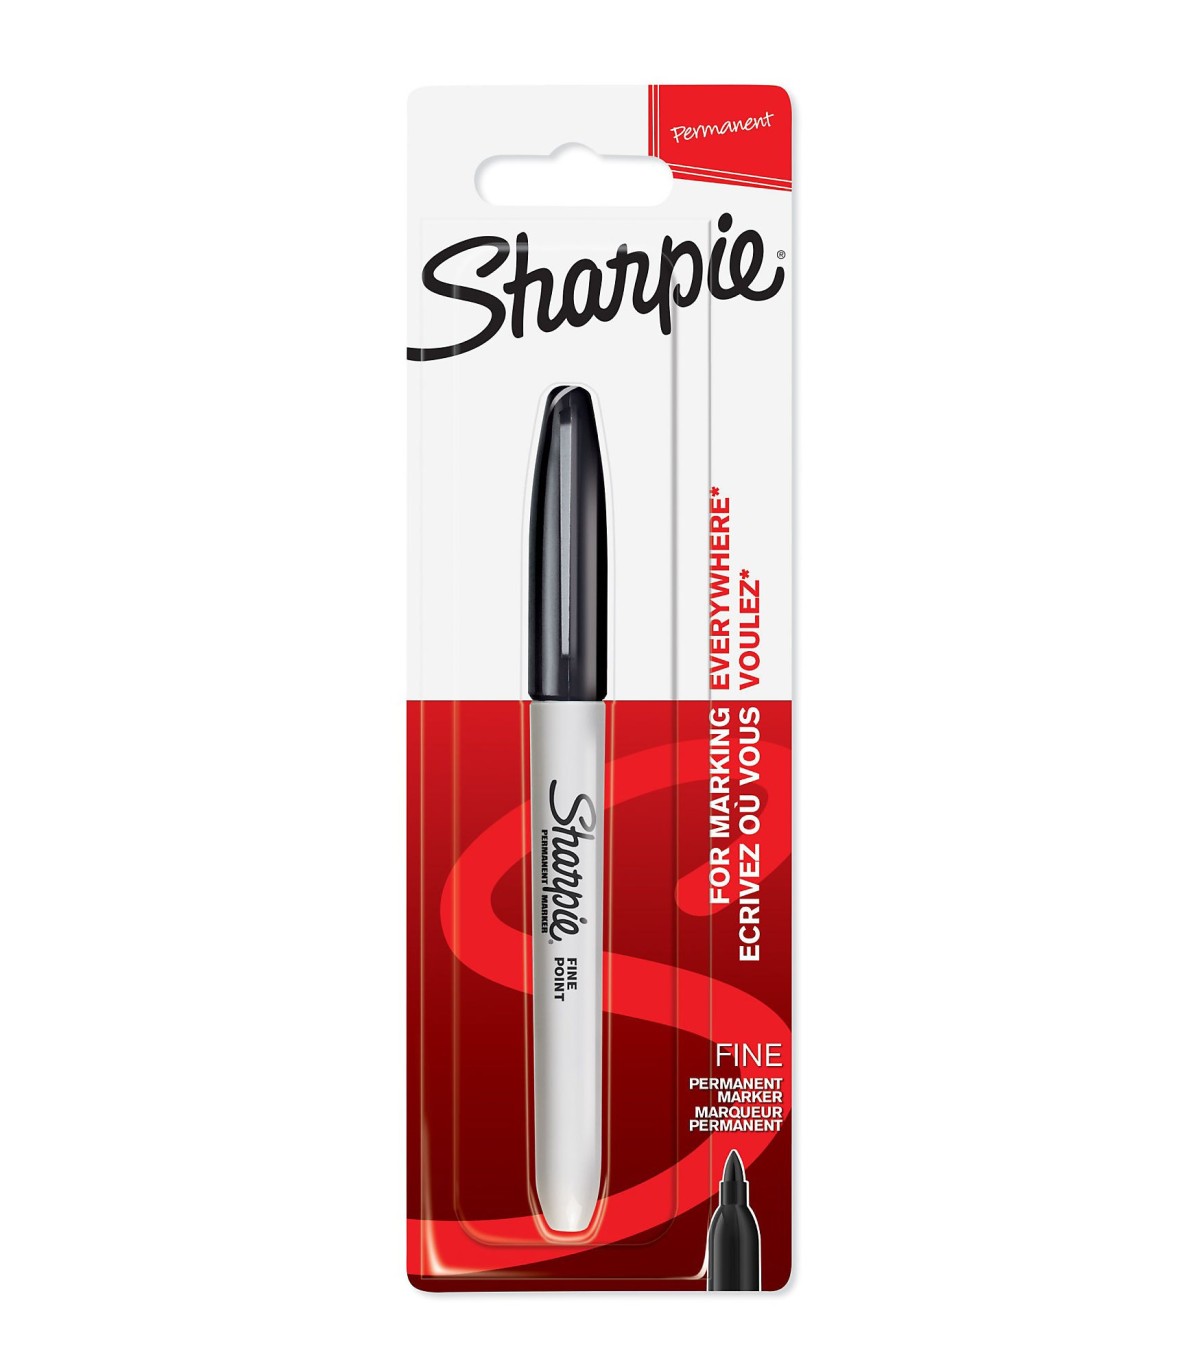 SHARPIE - 1 marqueur permanent - Noir - Pointe Fine - sous blister